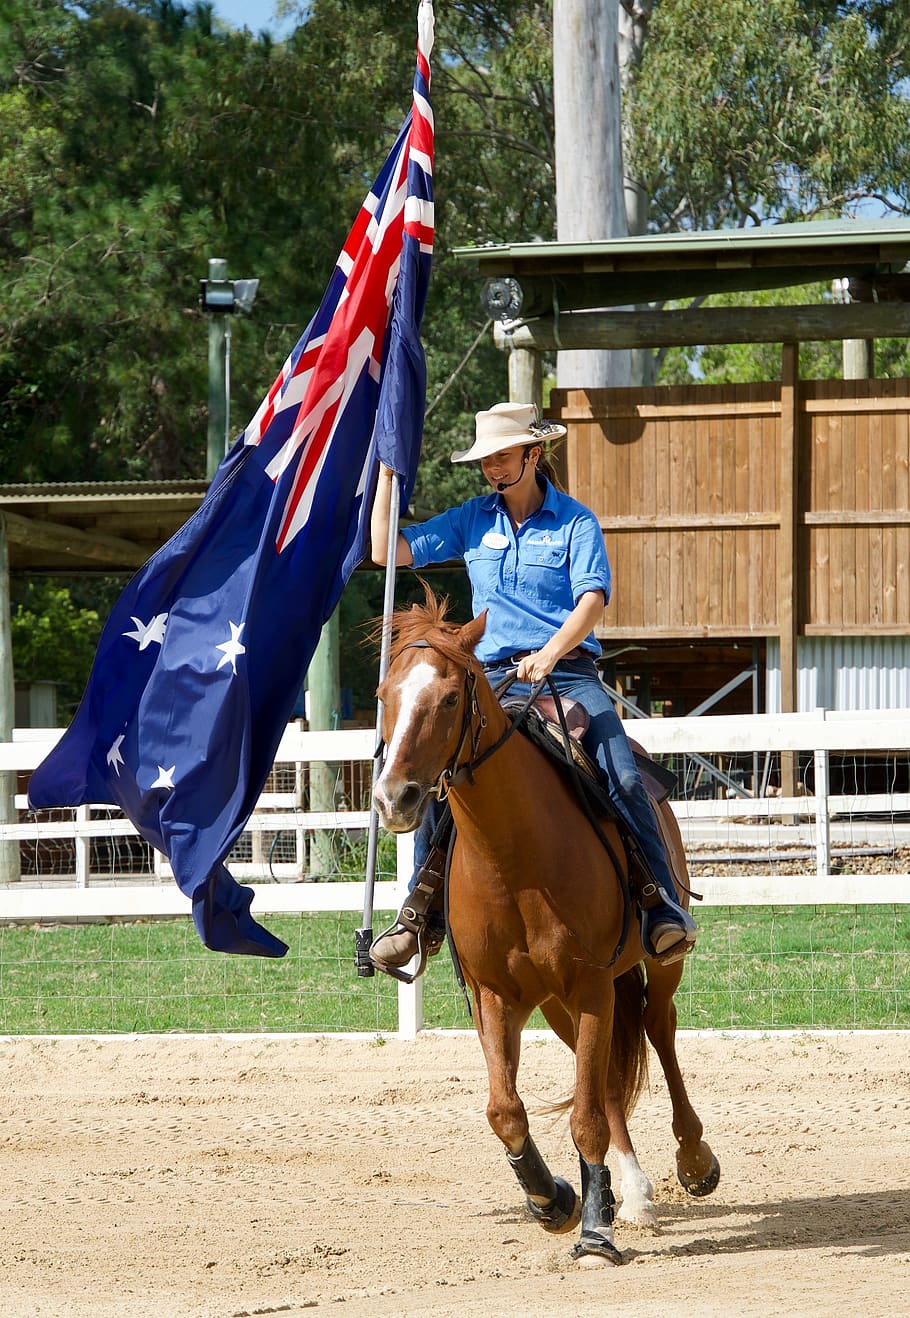 kuda, bendera, kompetisi, olahraga, australia, pengendara, penunggang kuda, spanduk, perayaan, parade